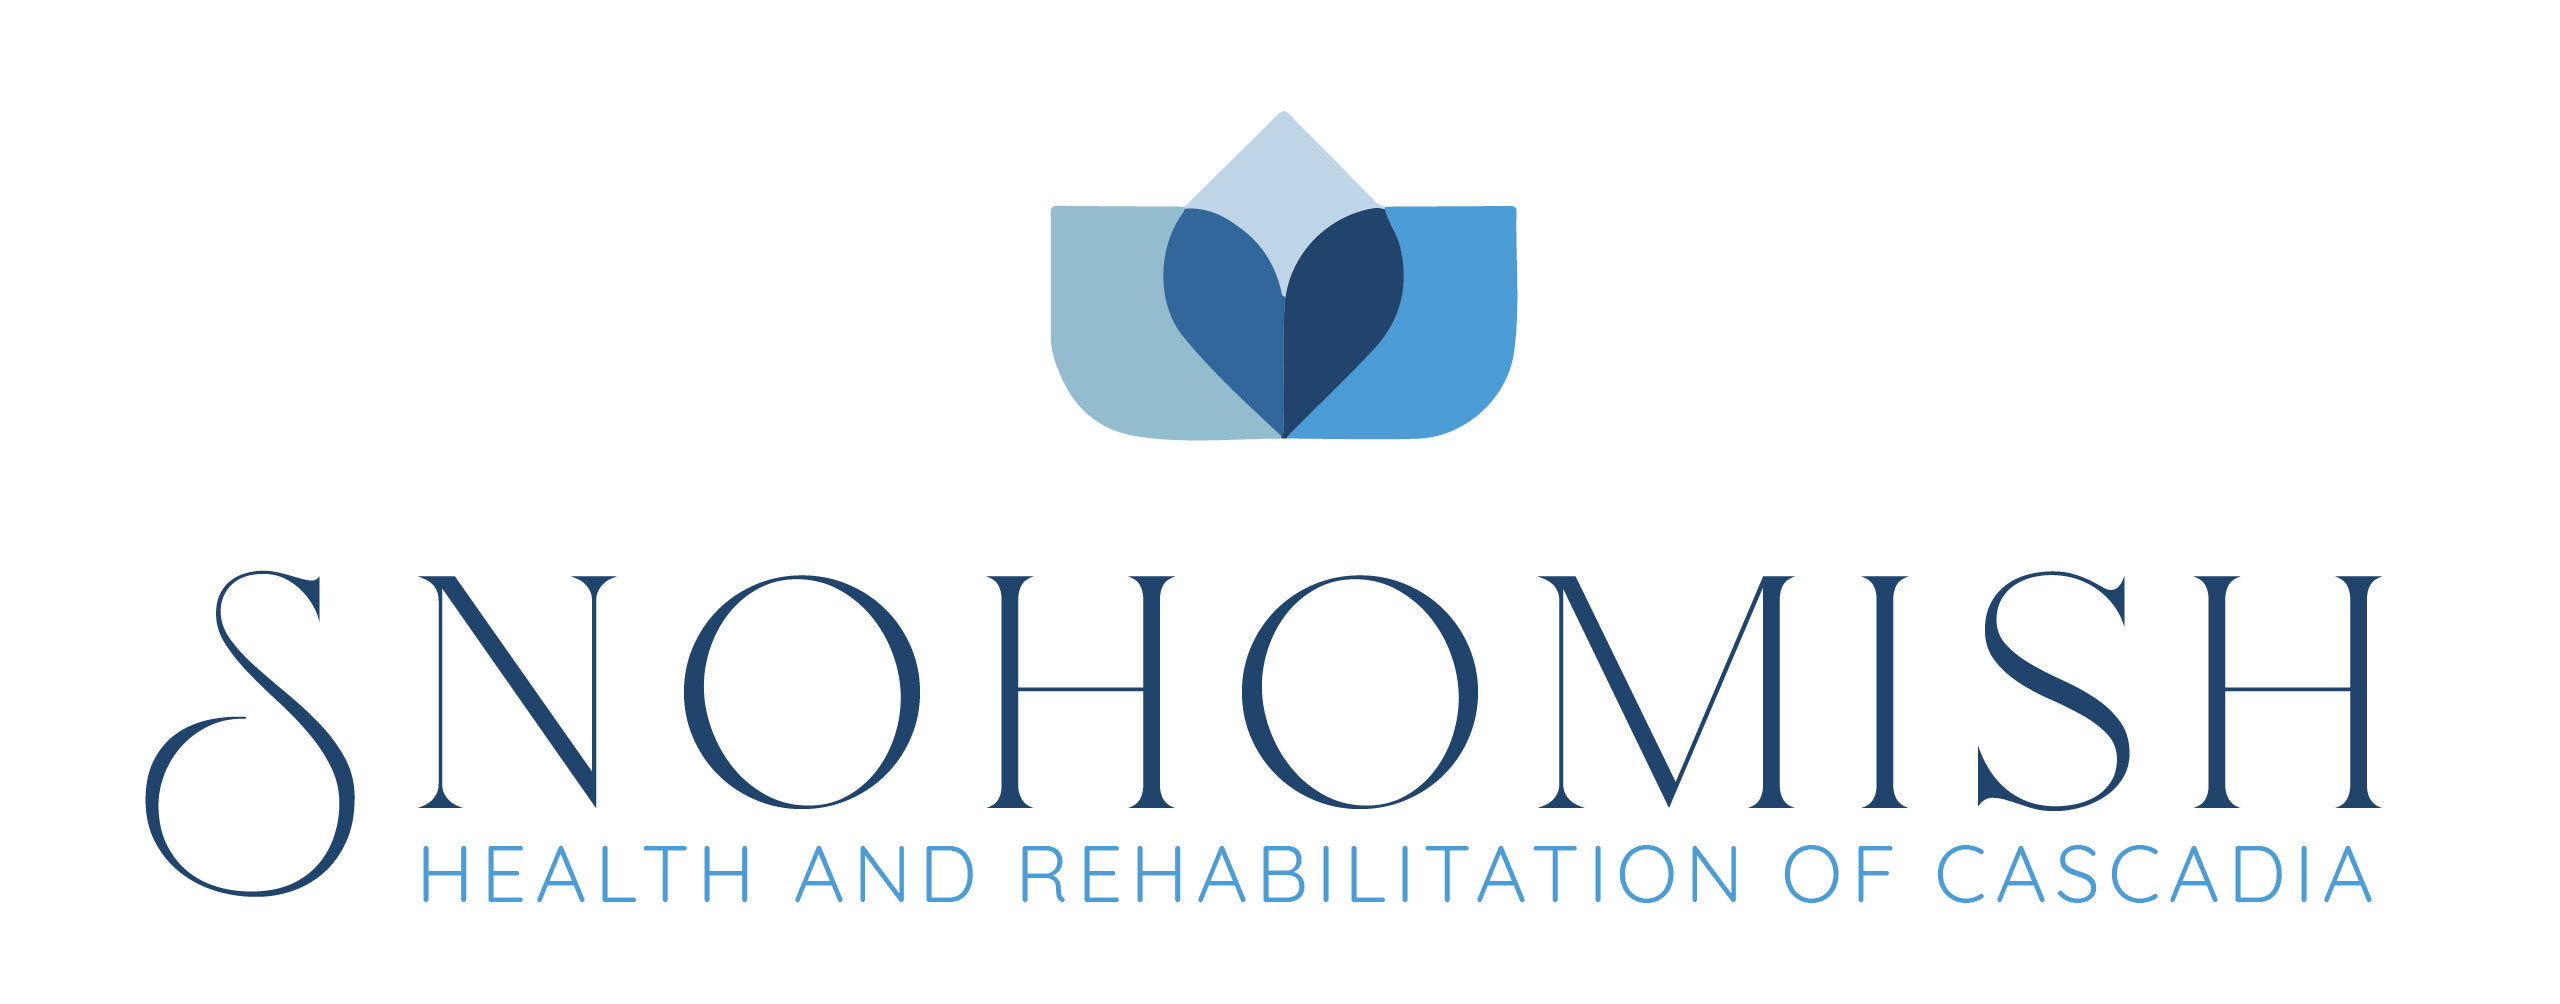 Snohomish Health and Rehabilitation of Cascadia